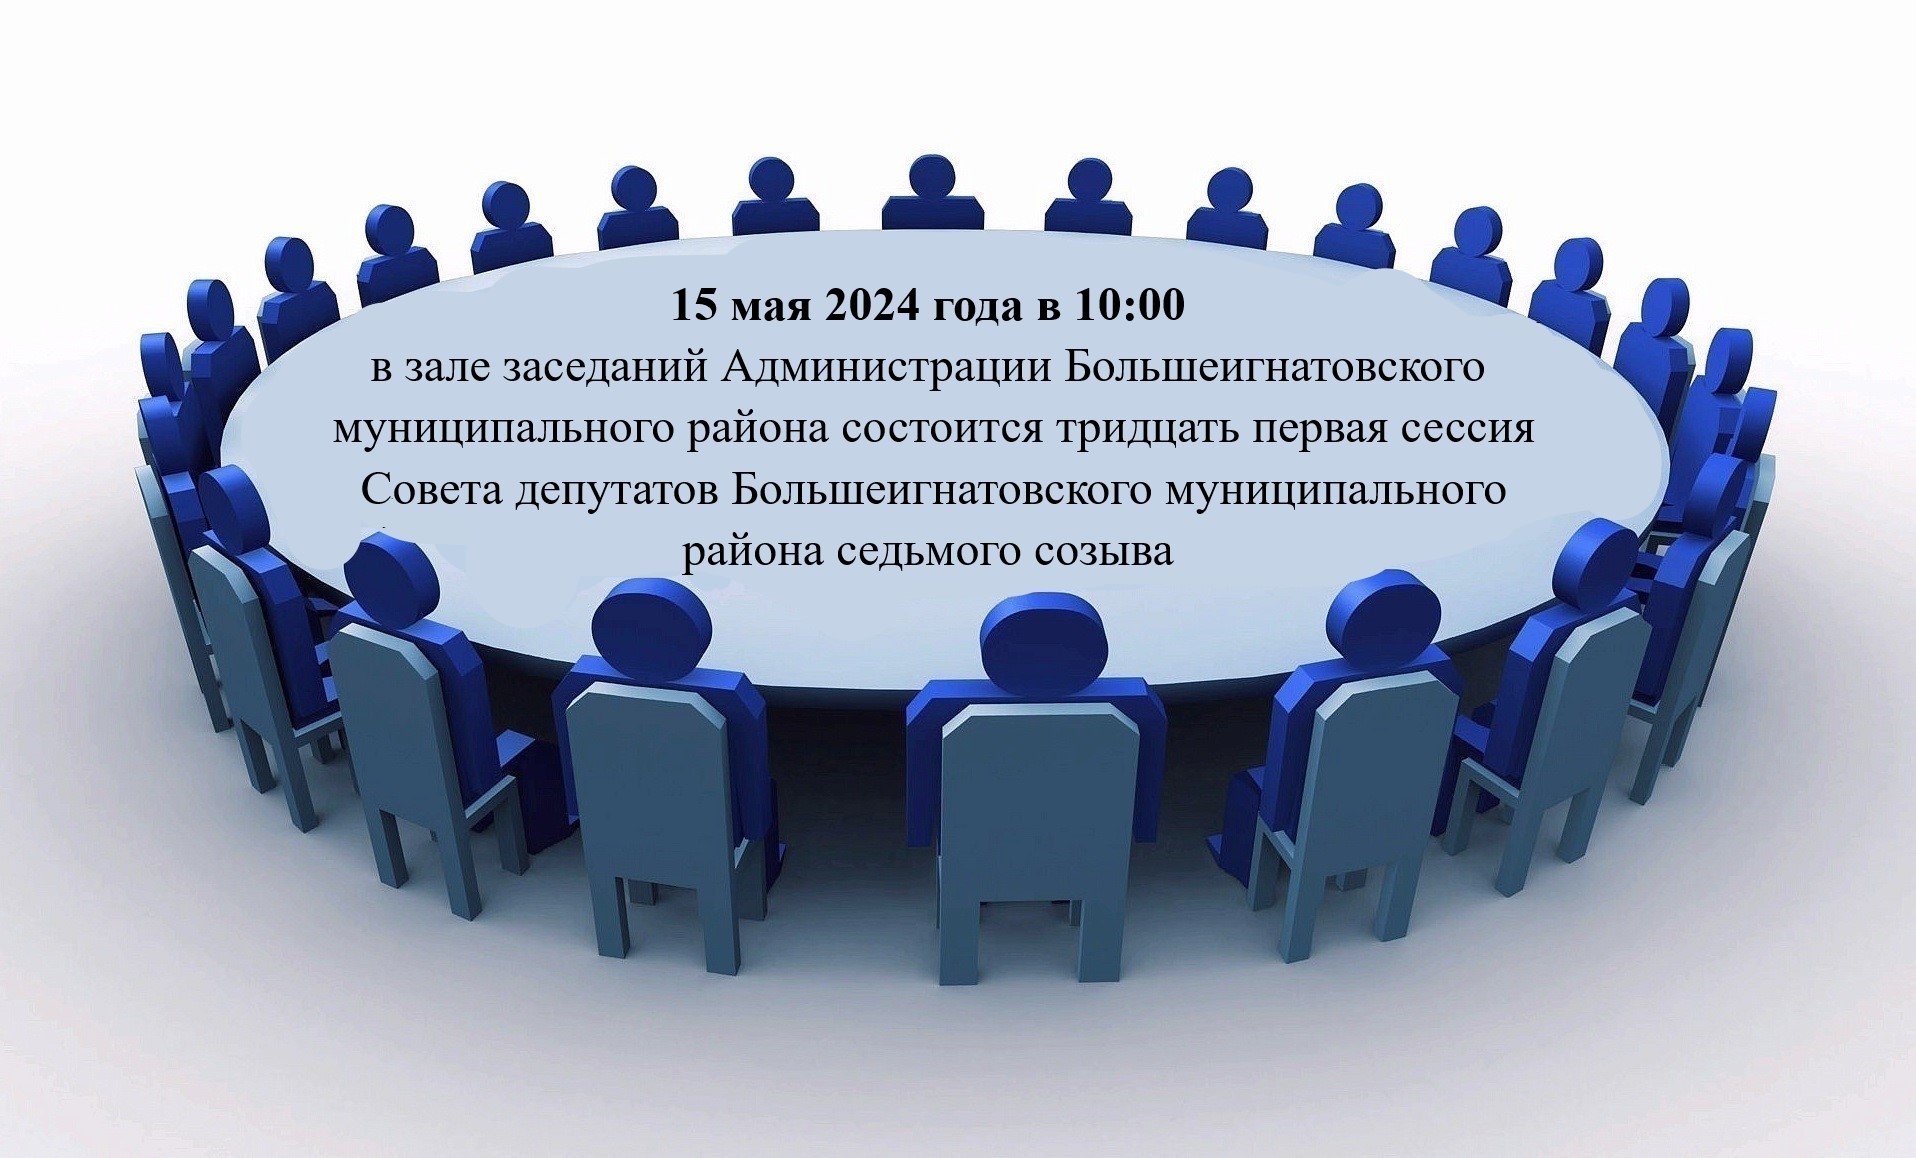 Тридцать первая сессия Совета депутатов Большеигнатовского муниципального района седьмого созыва.